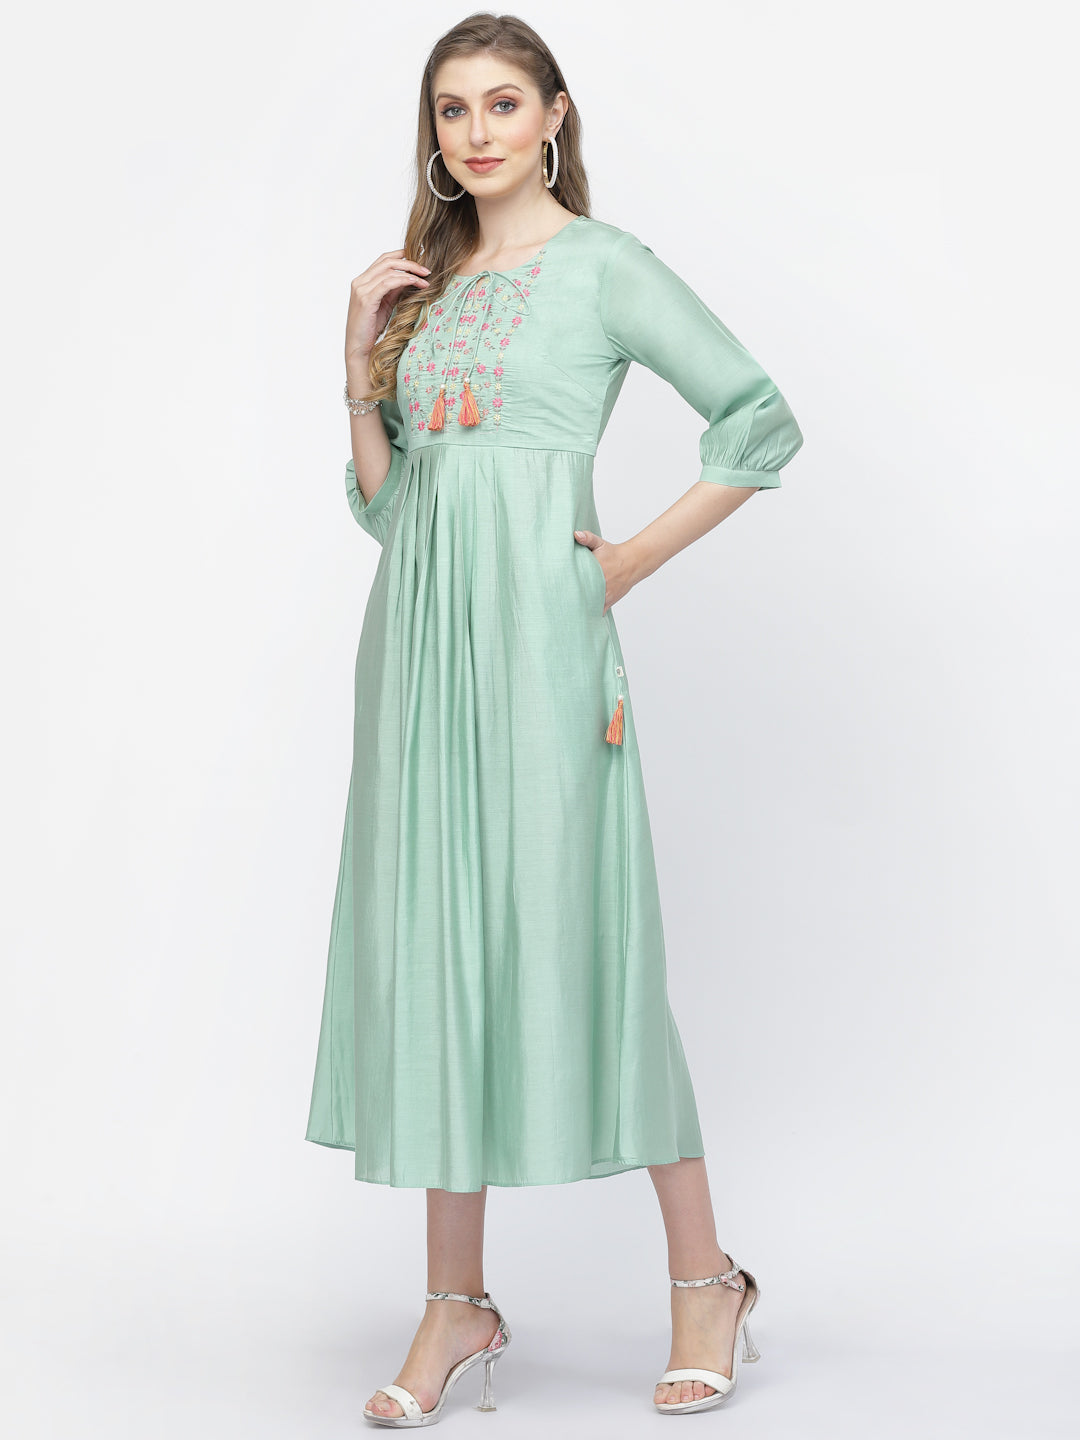 Sea Mist Chanderi Silk Embroidered Summer Dress - ARH1372